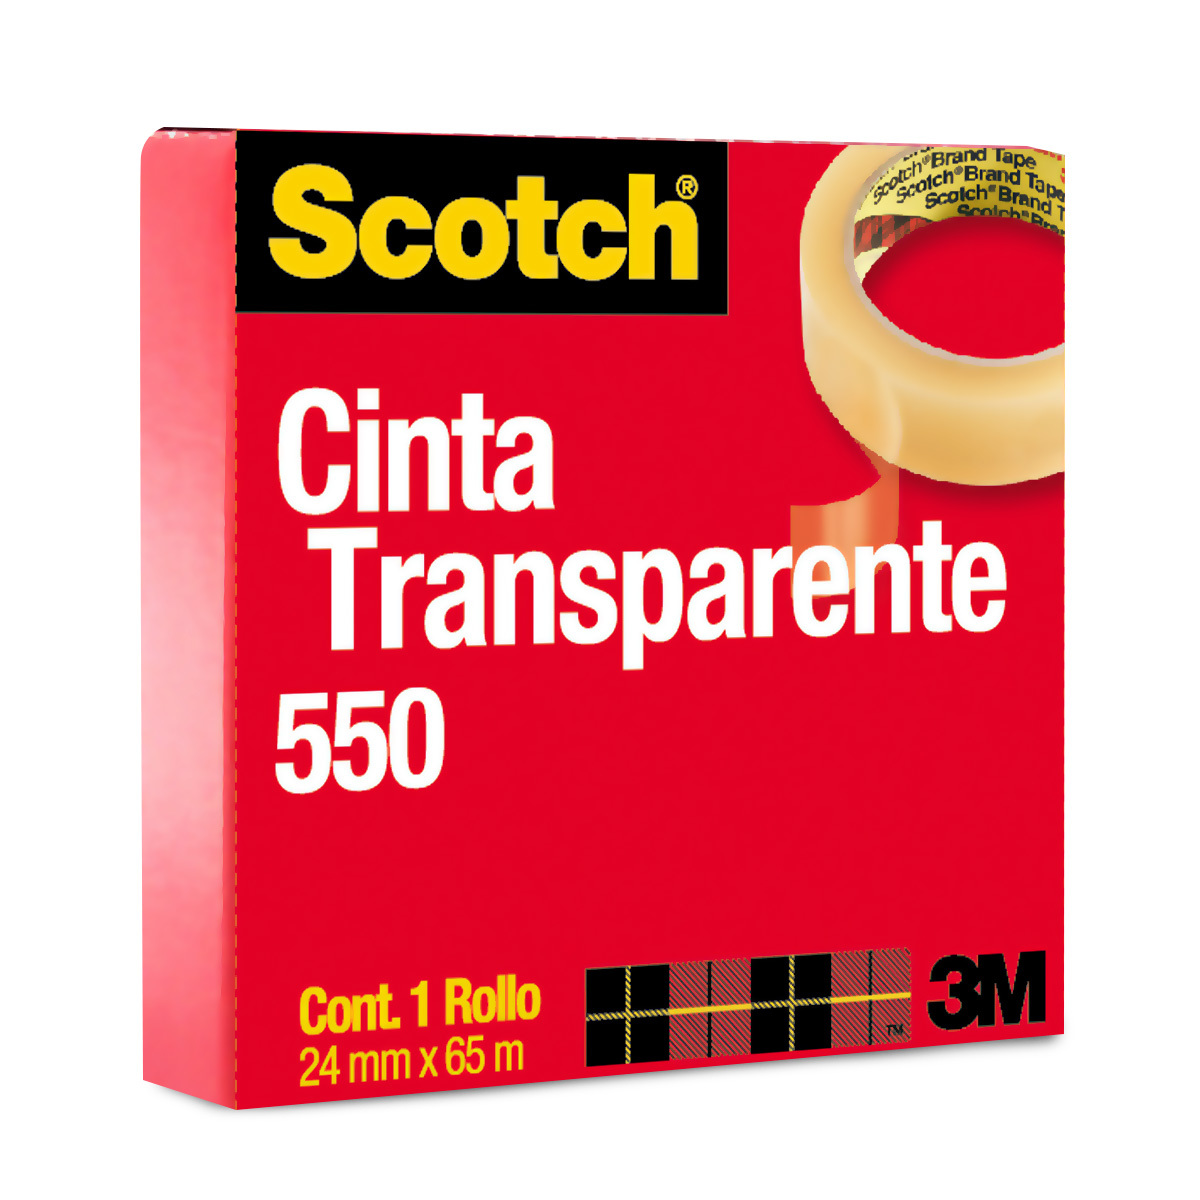  3 M 1.5 in 600 Scotch – Cinta adhesiva transparente 1 Caso (24  rollos) s-18659 : Productos de Oficina